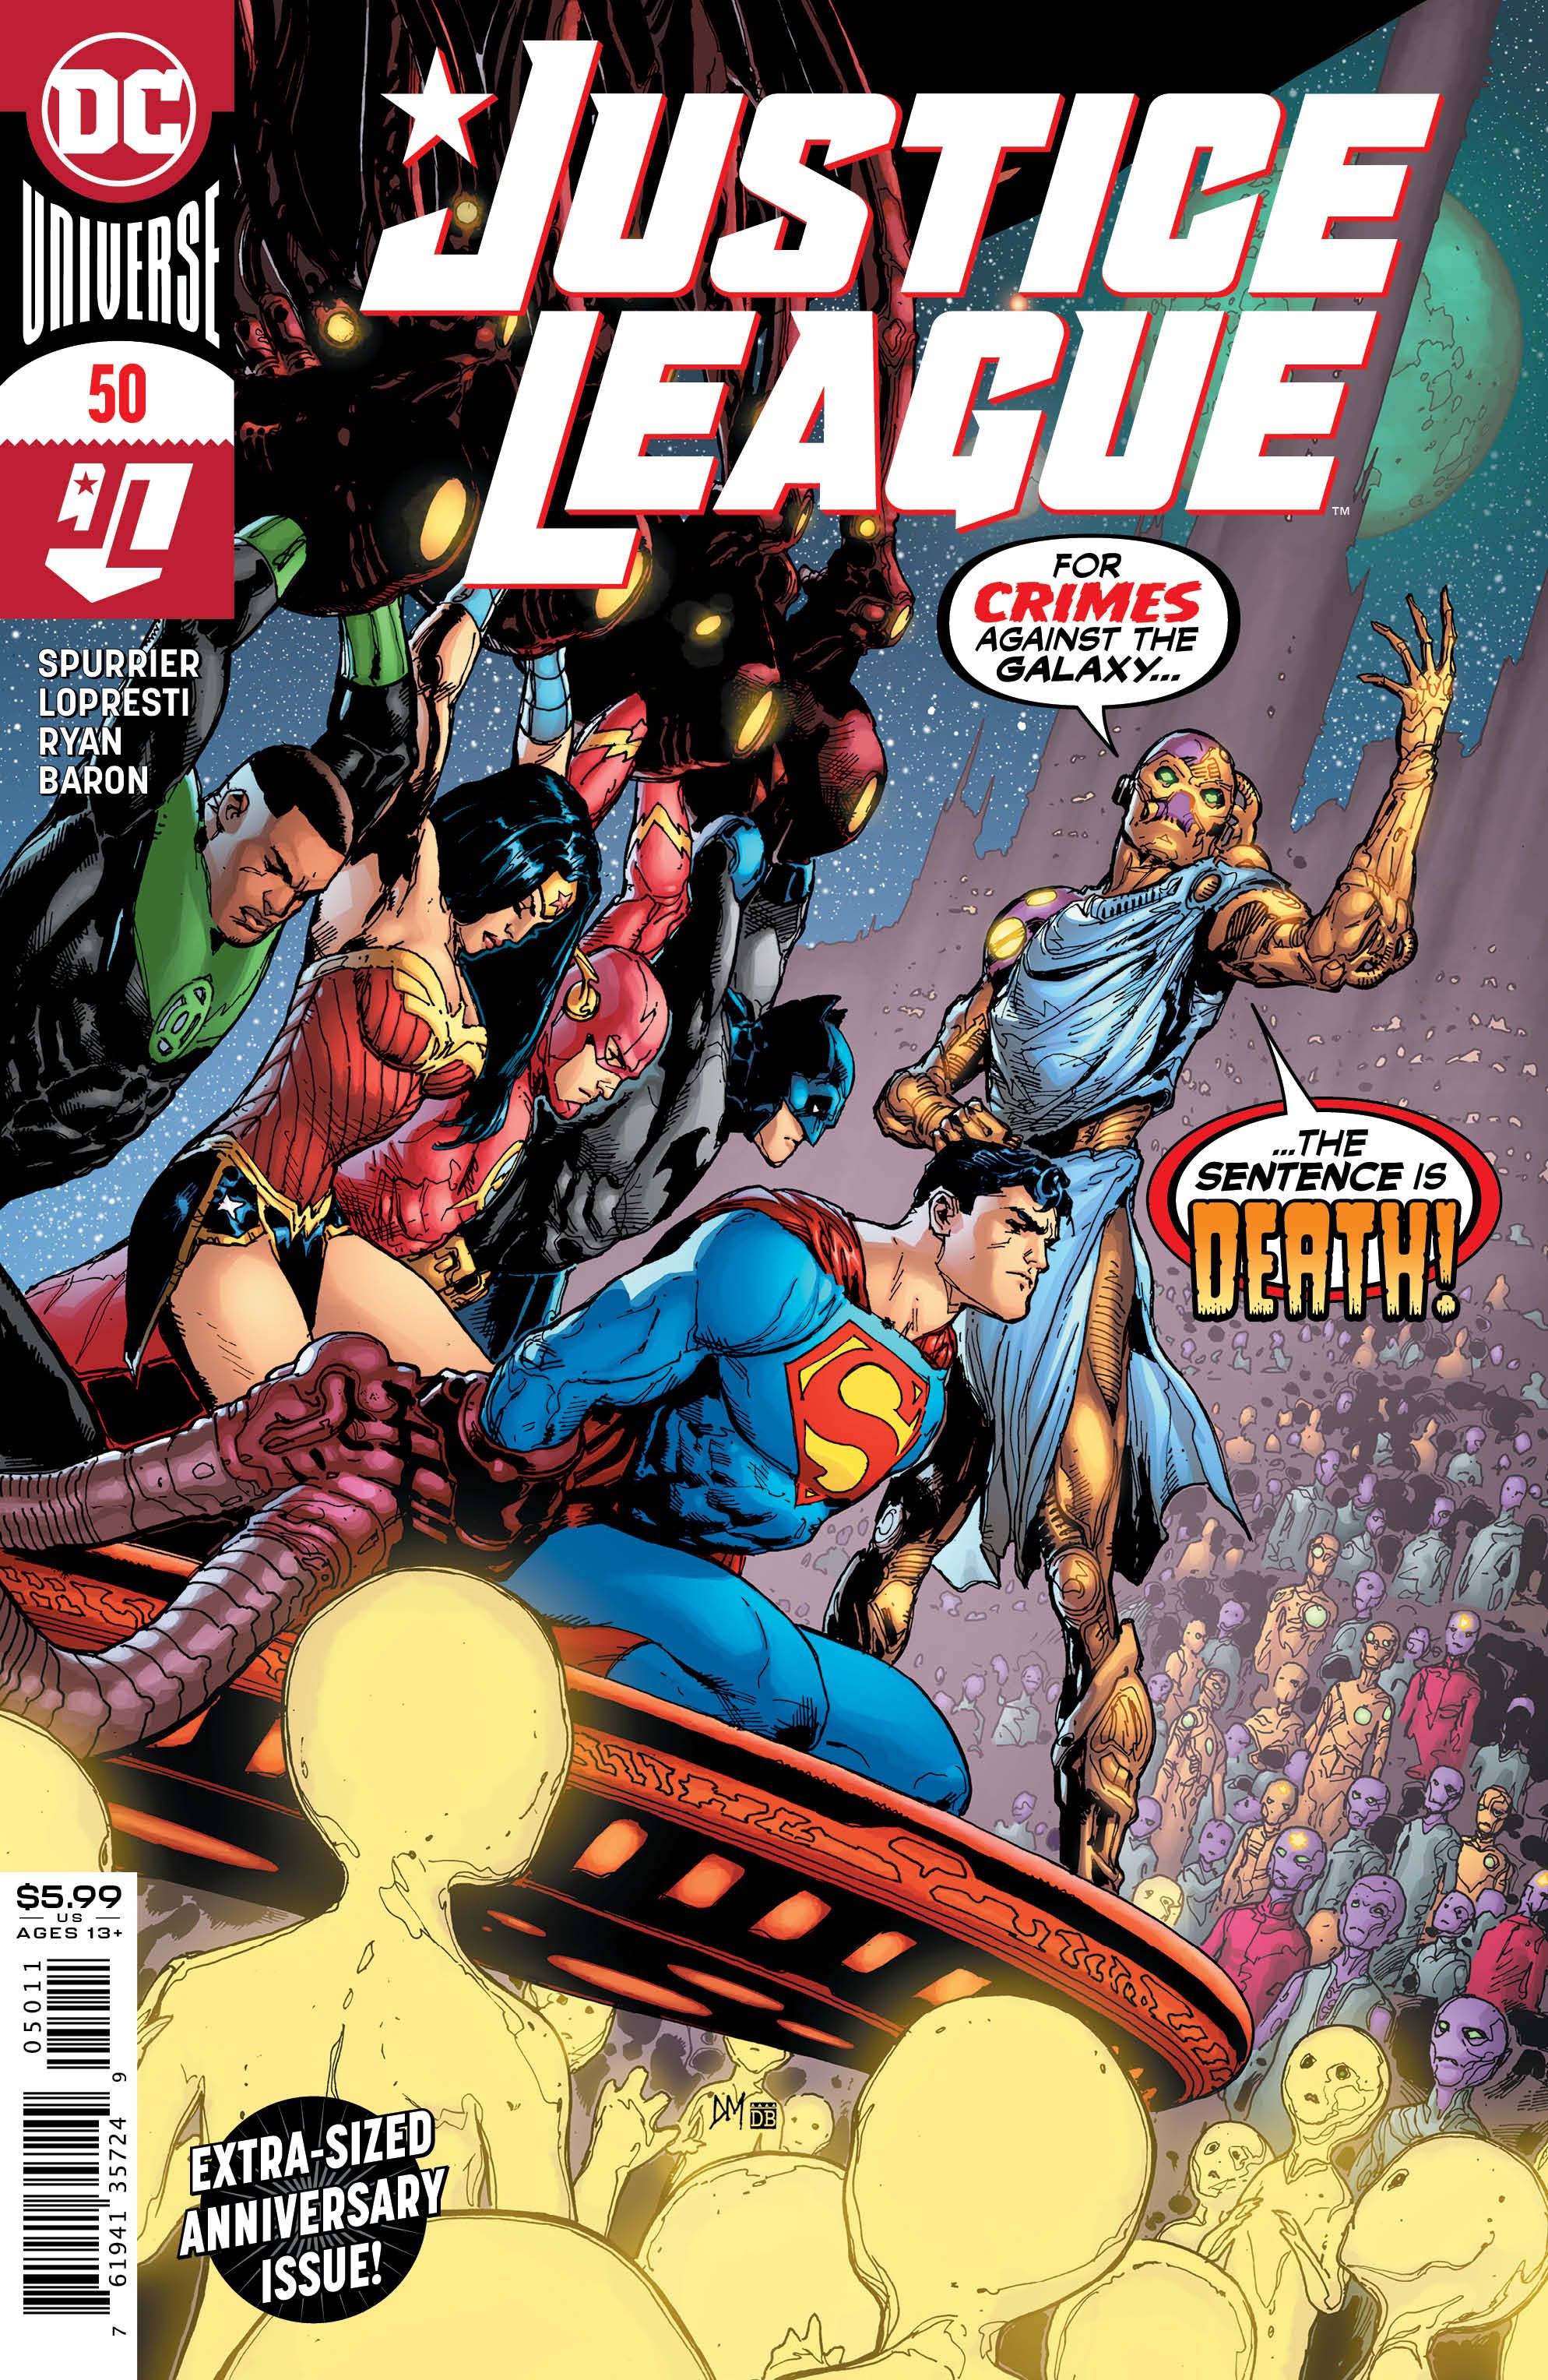 Preview Justice League 50 